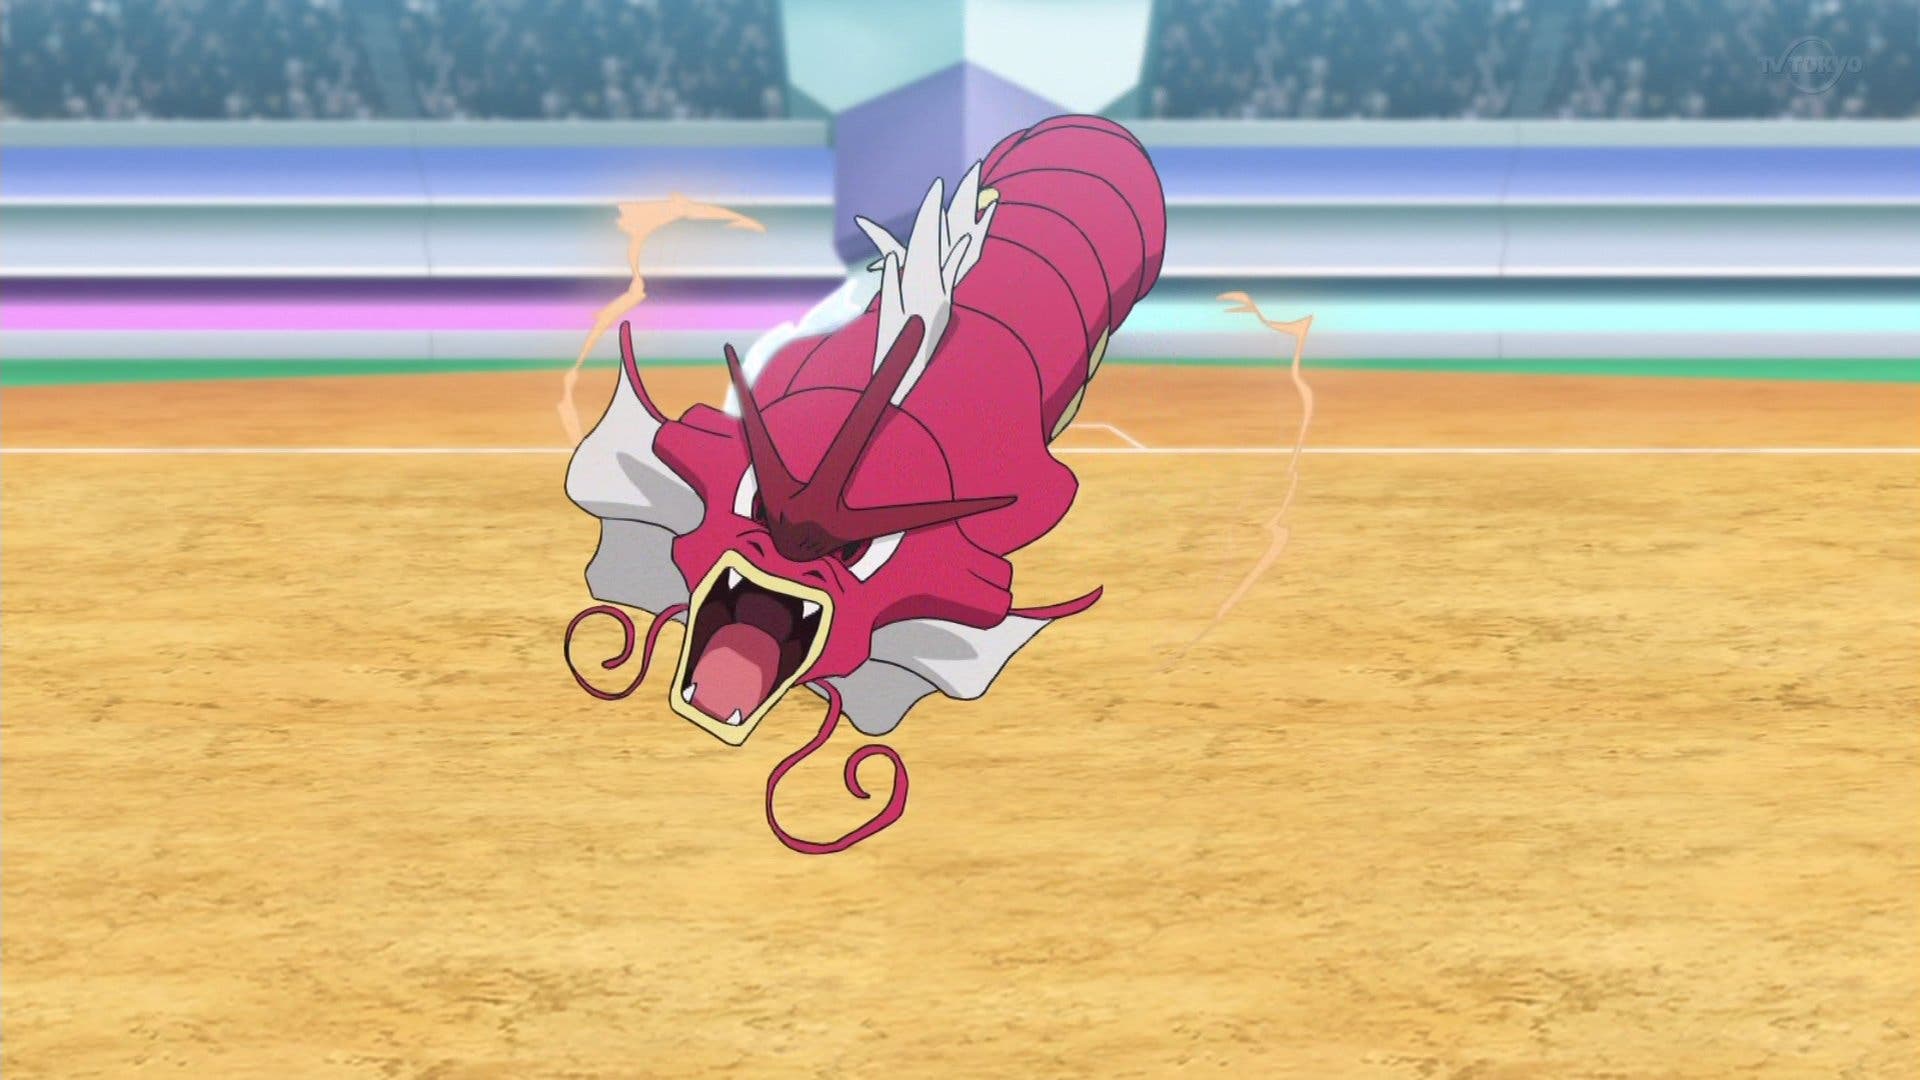 Avance en vídeo del próximo episodio de Viajes Pokémon en Japón y animación especial